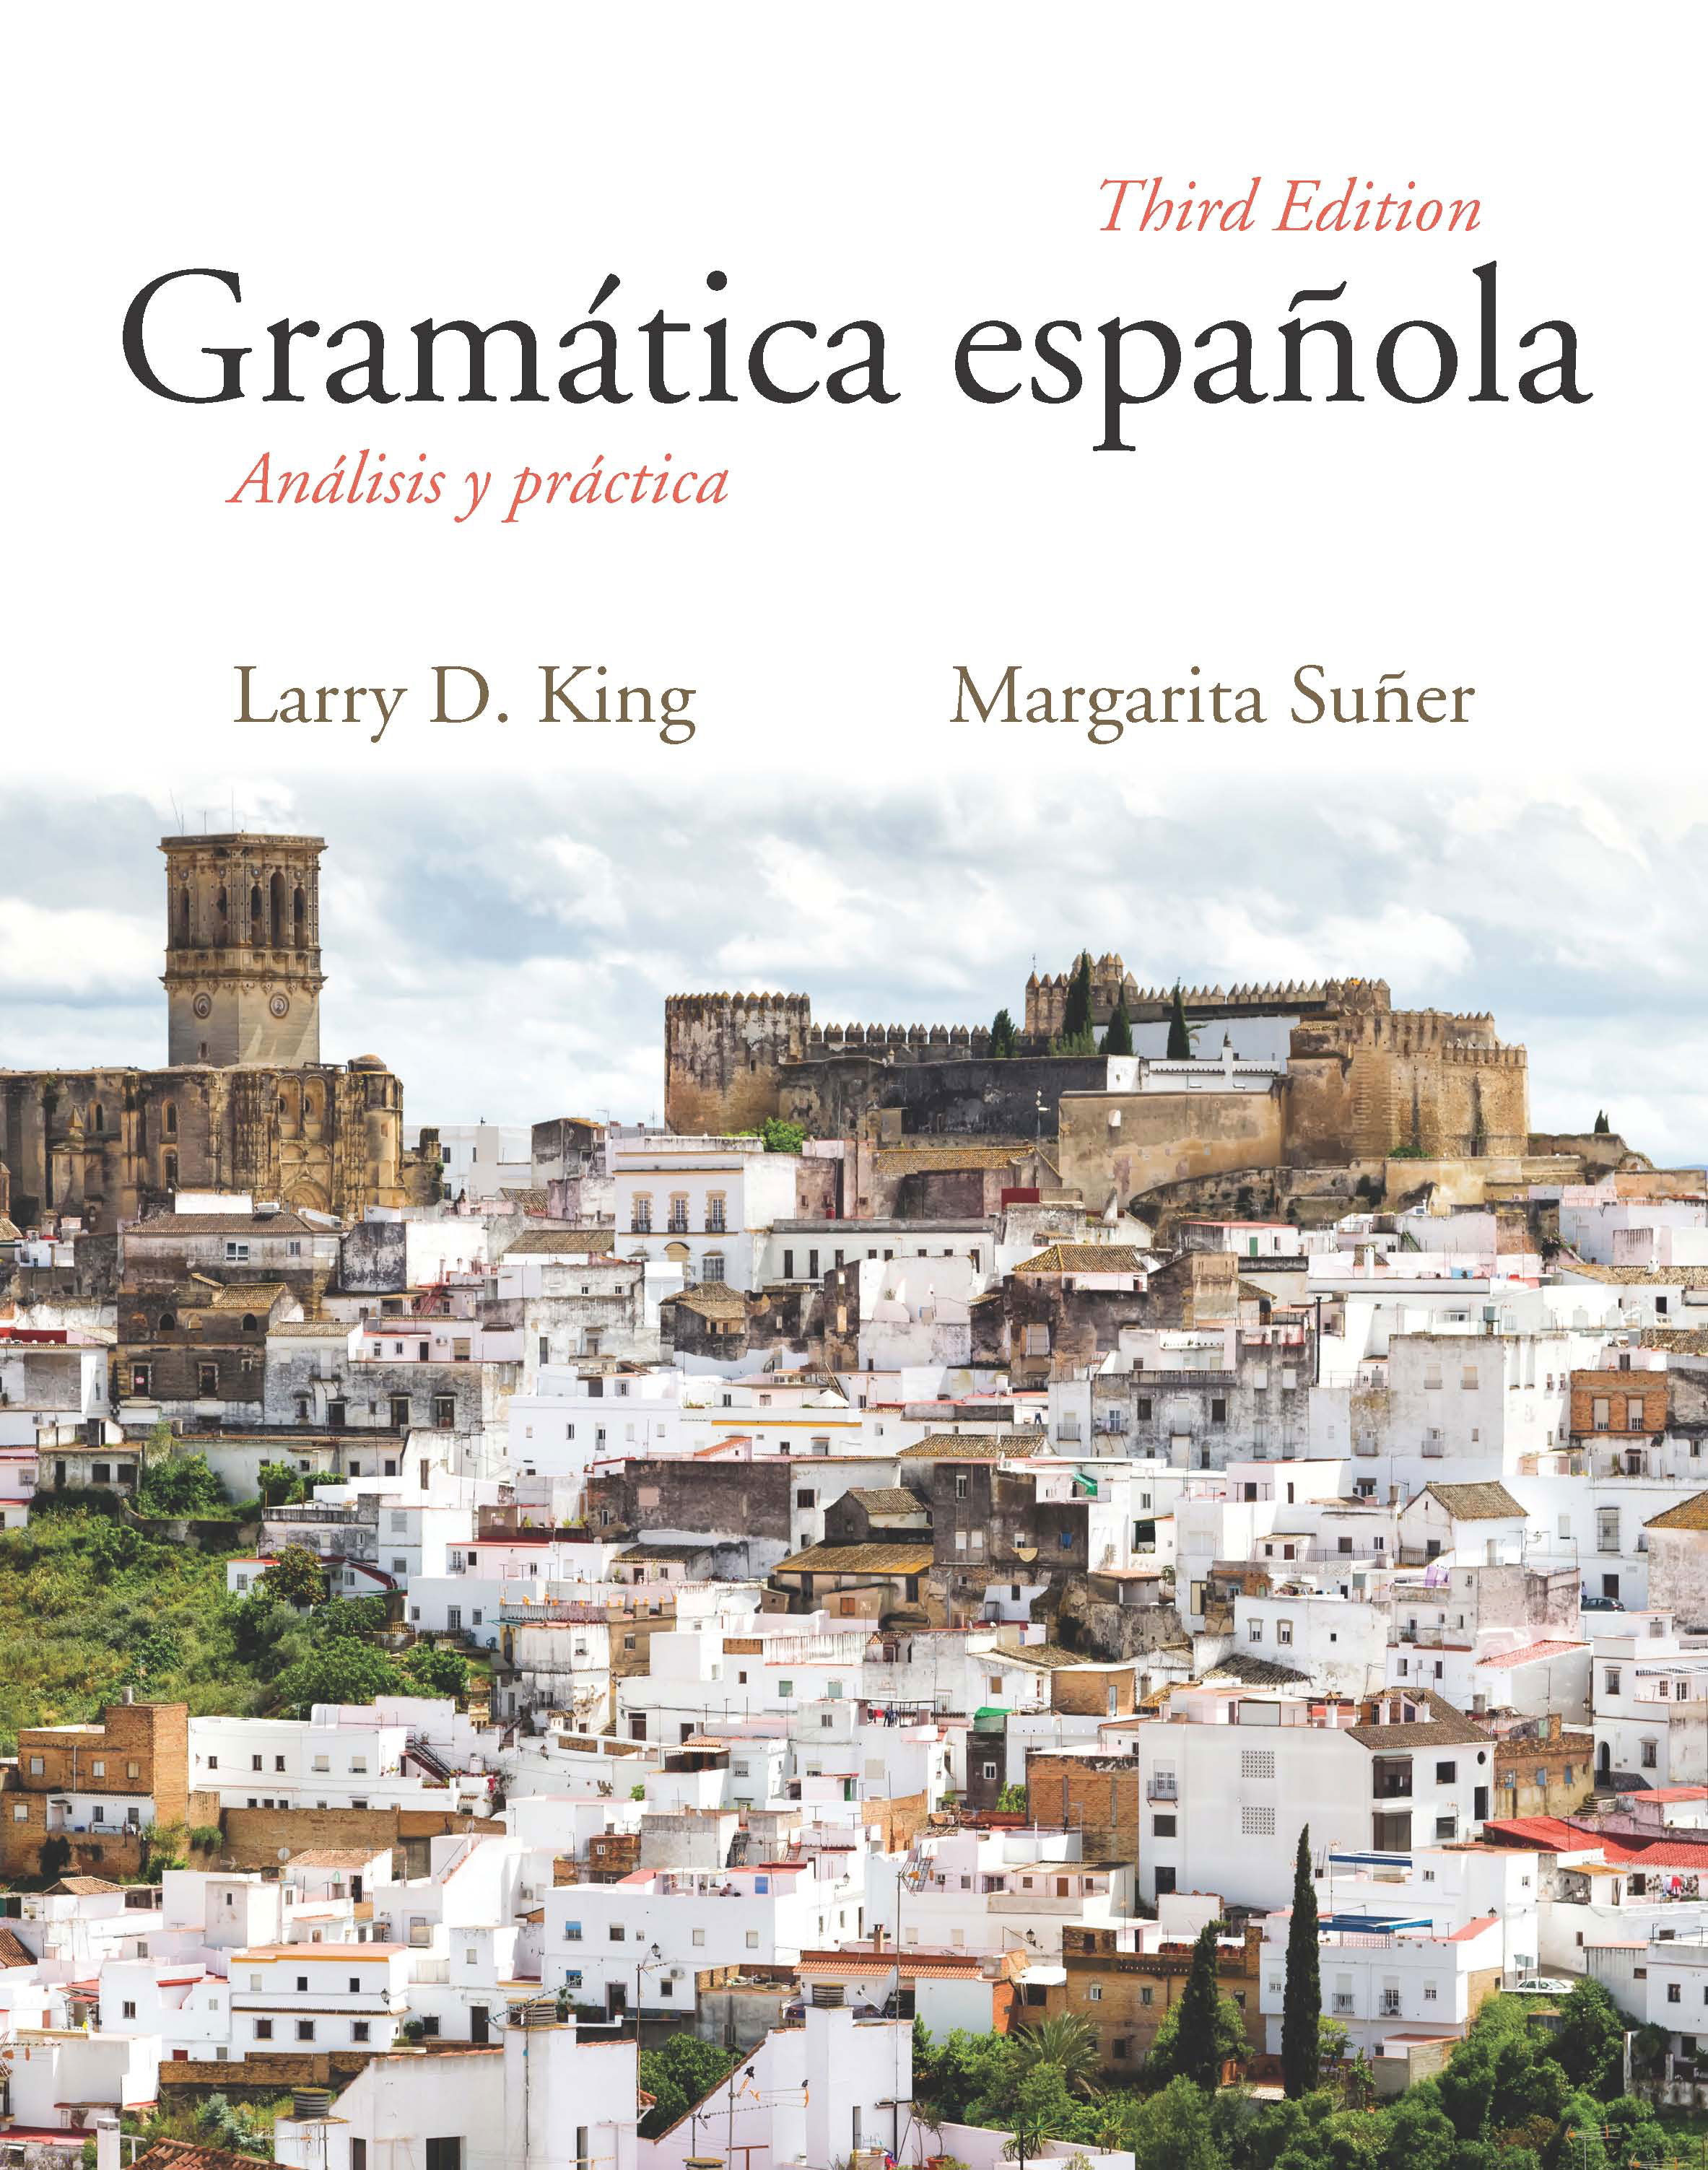 Gramática española: Análisis y práctica, Third Edition by Larry D. King, Margarita  Suñer